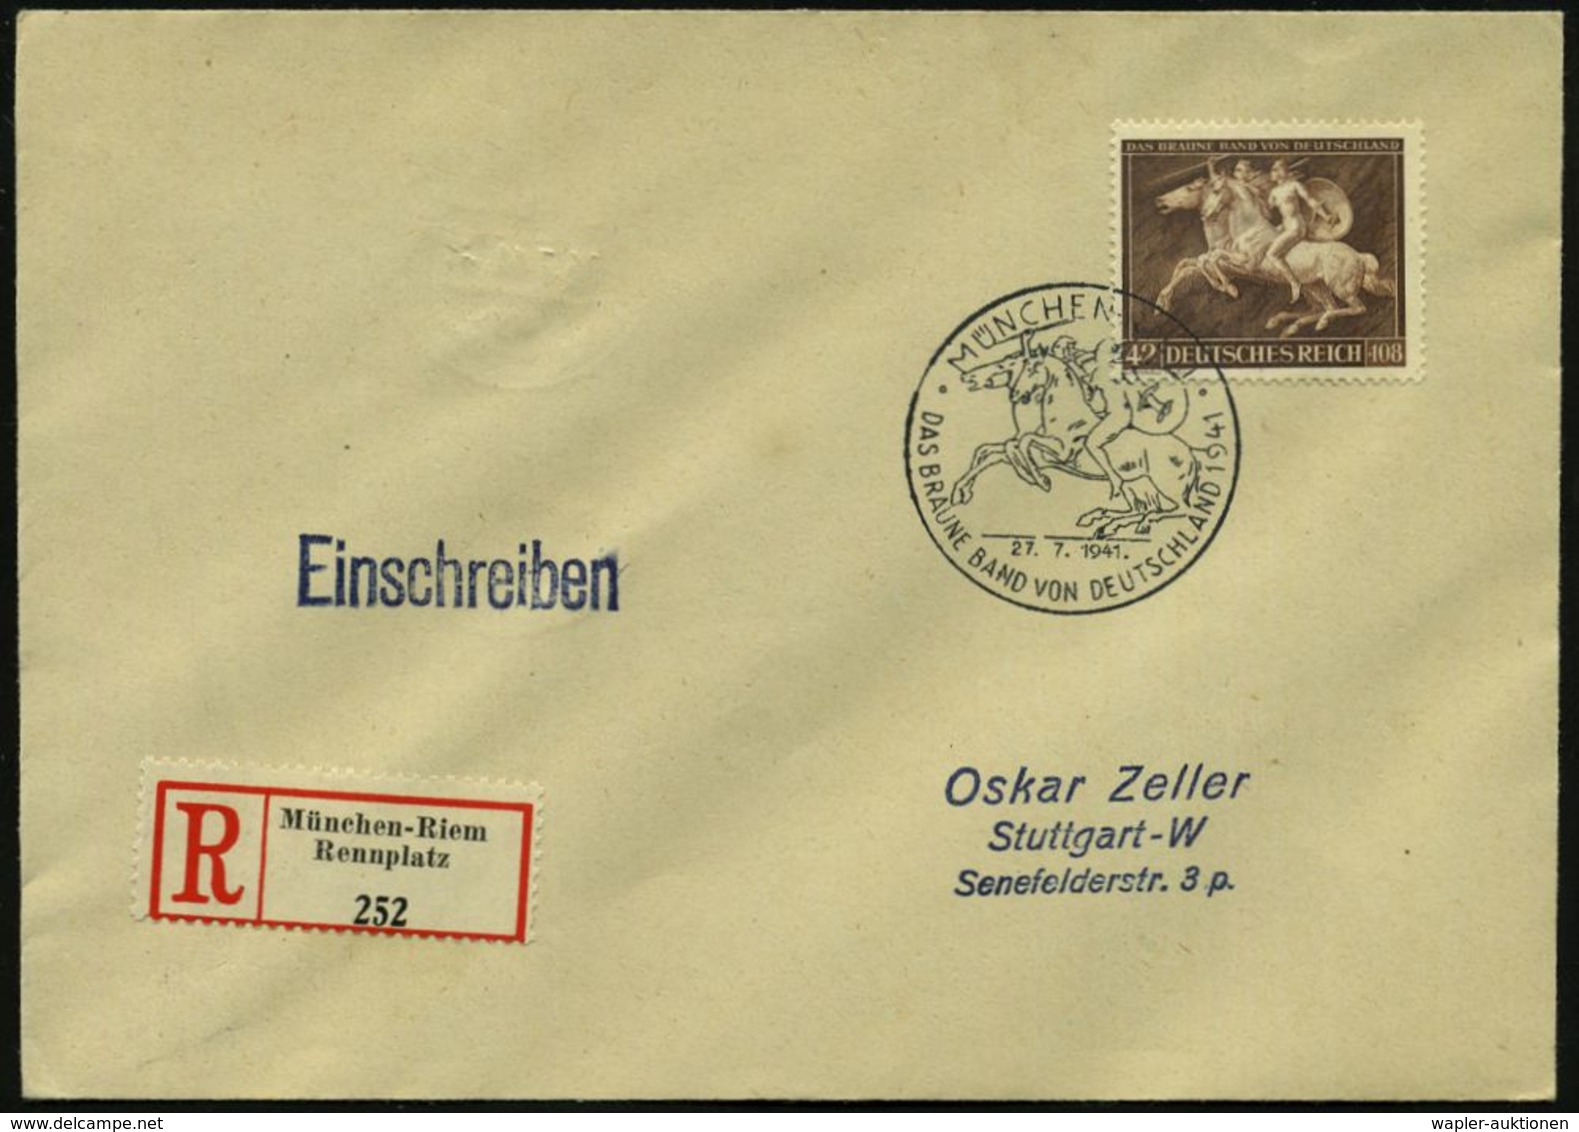 ANTIKES GRIECHENLAND : MÜNCHEN-RIEM/ DAS BRAUNE BAND VON DEUTSCHLAND 1941 (27.7.) SSt = 2 Amazonen Zu Pferd Auf Motivgl. - Archéologie